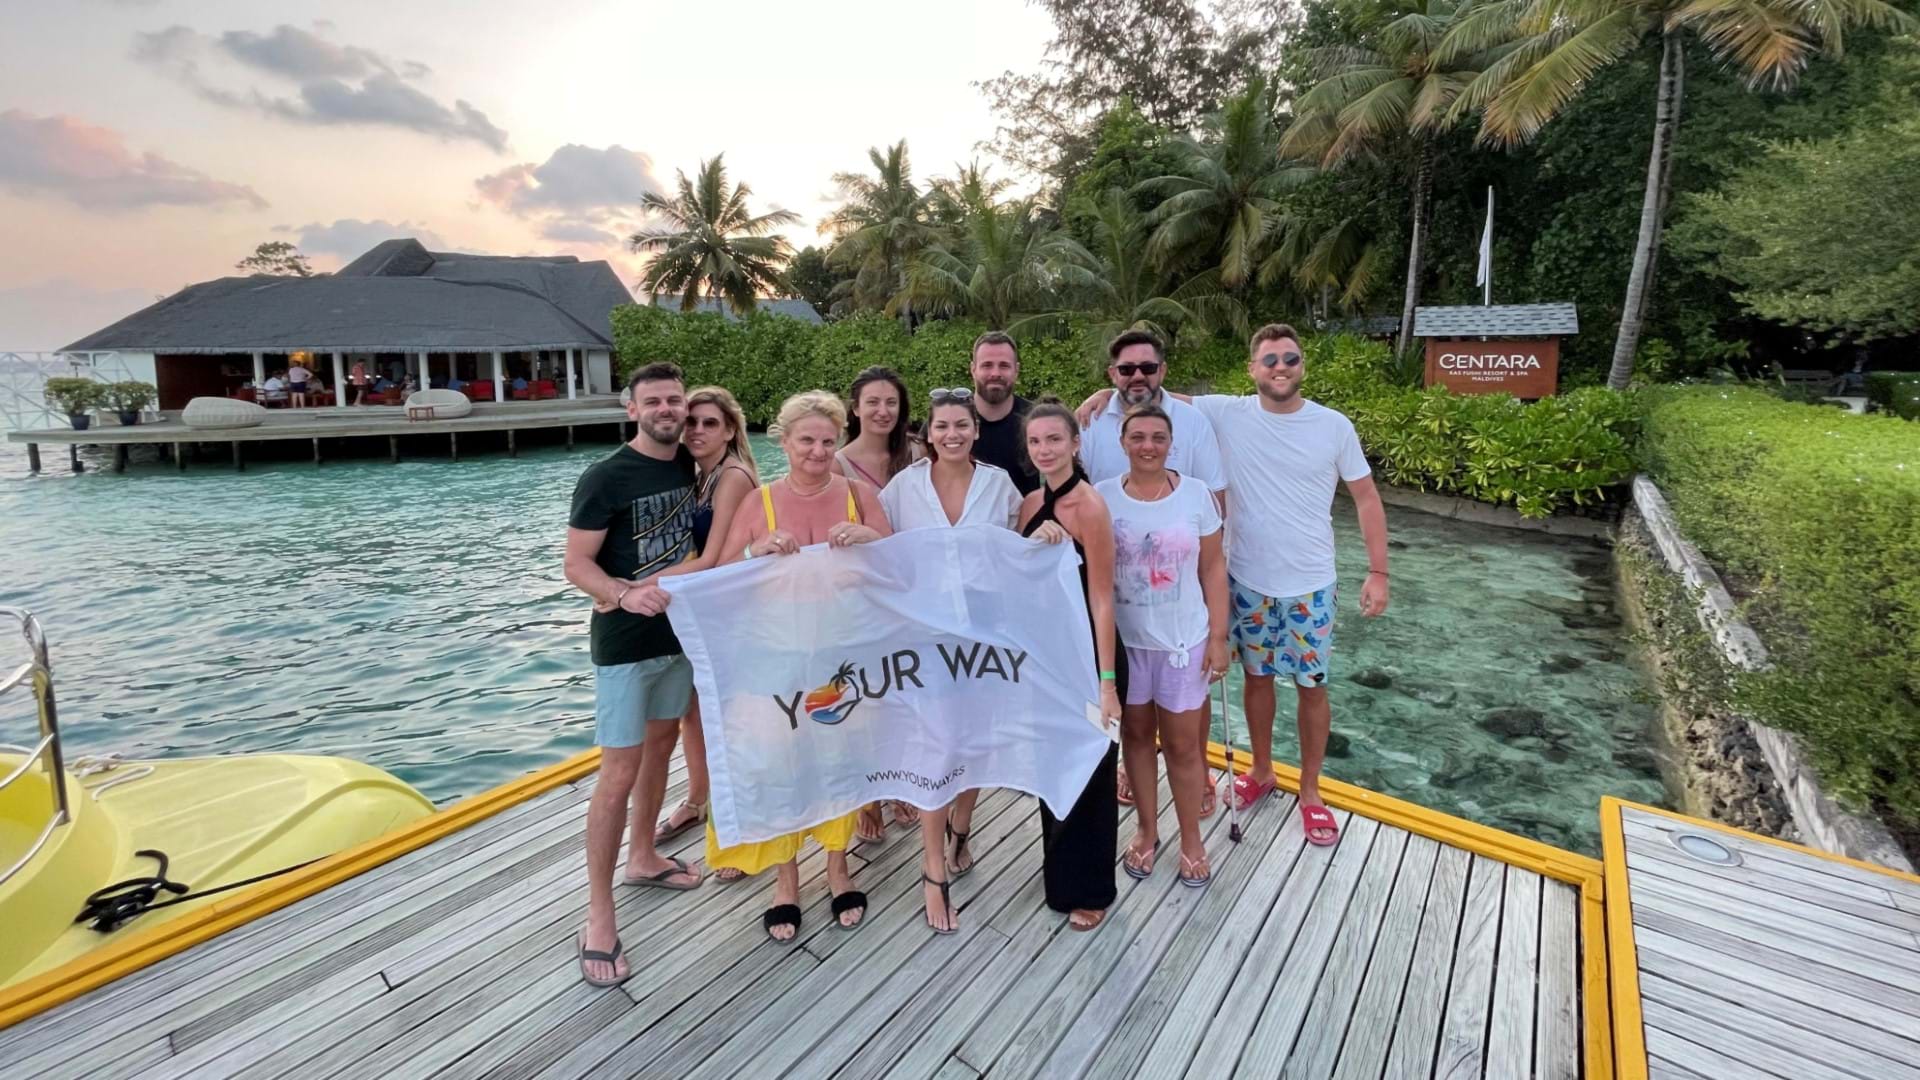 Maldivi putovanje - putnici agencije Your Way na jednom od mnogobrojnih ostrva Maldiva.